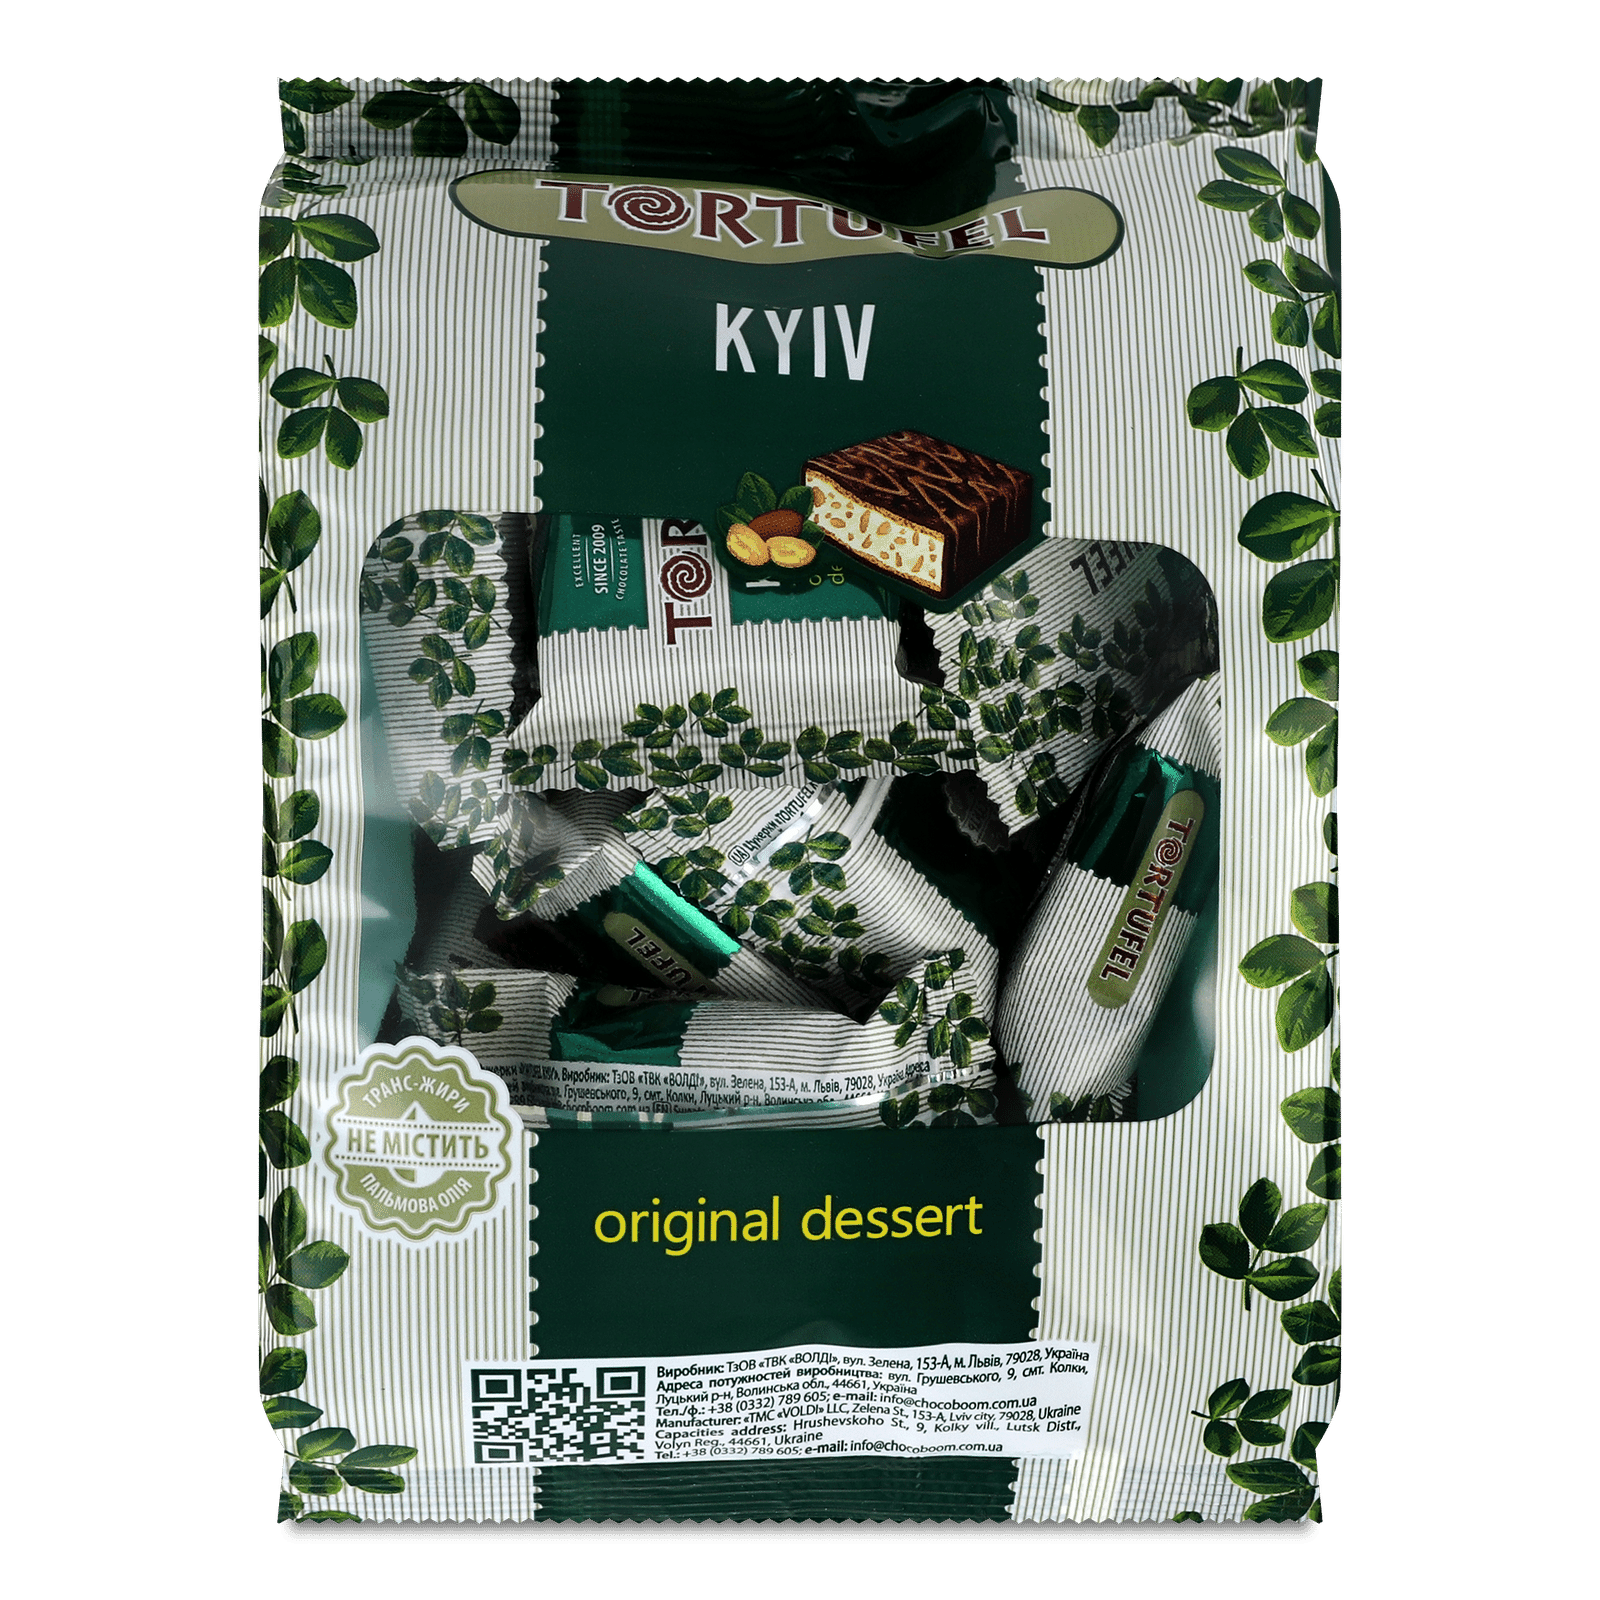 Цукерки ChokoBoom Тortufel Kyiv сендвіч вафельний - 1